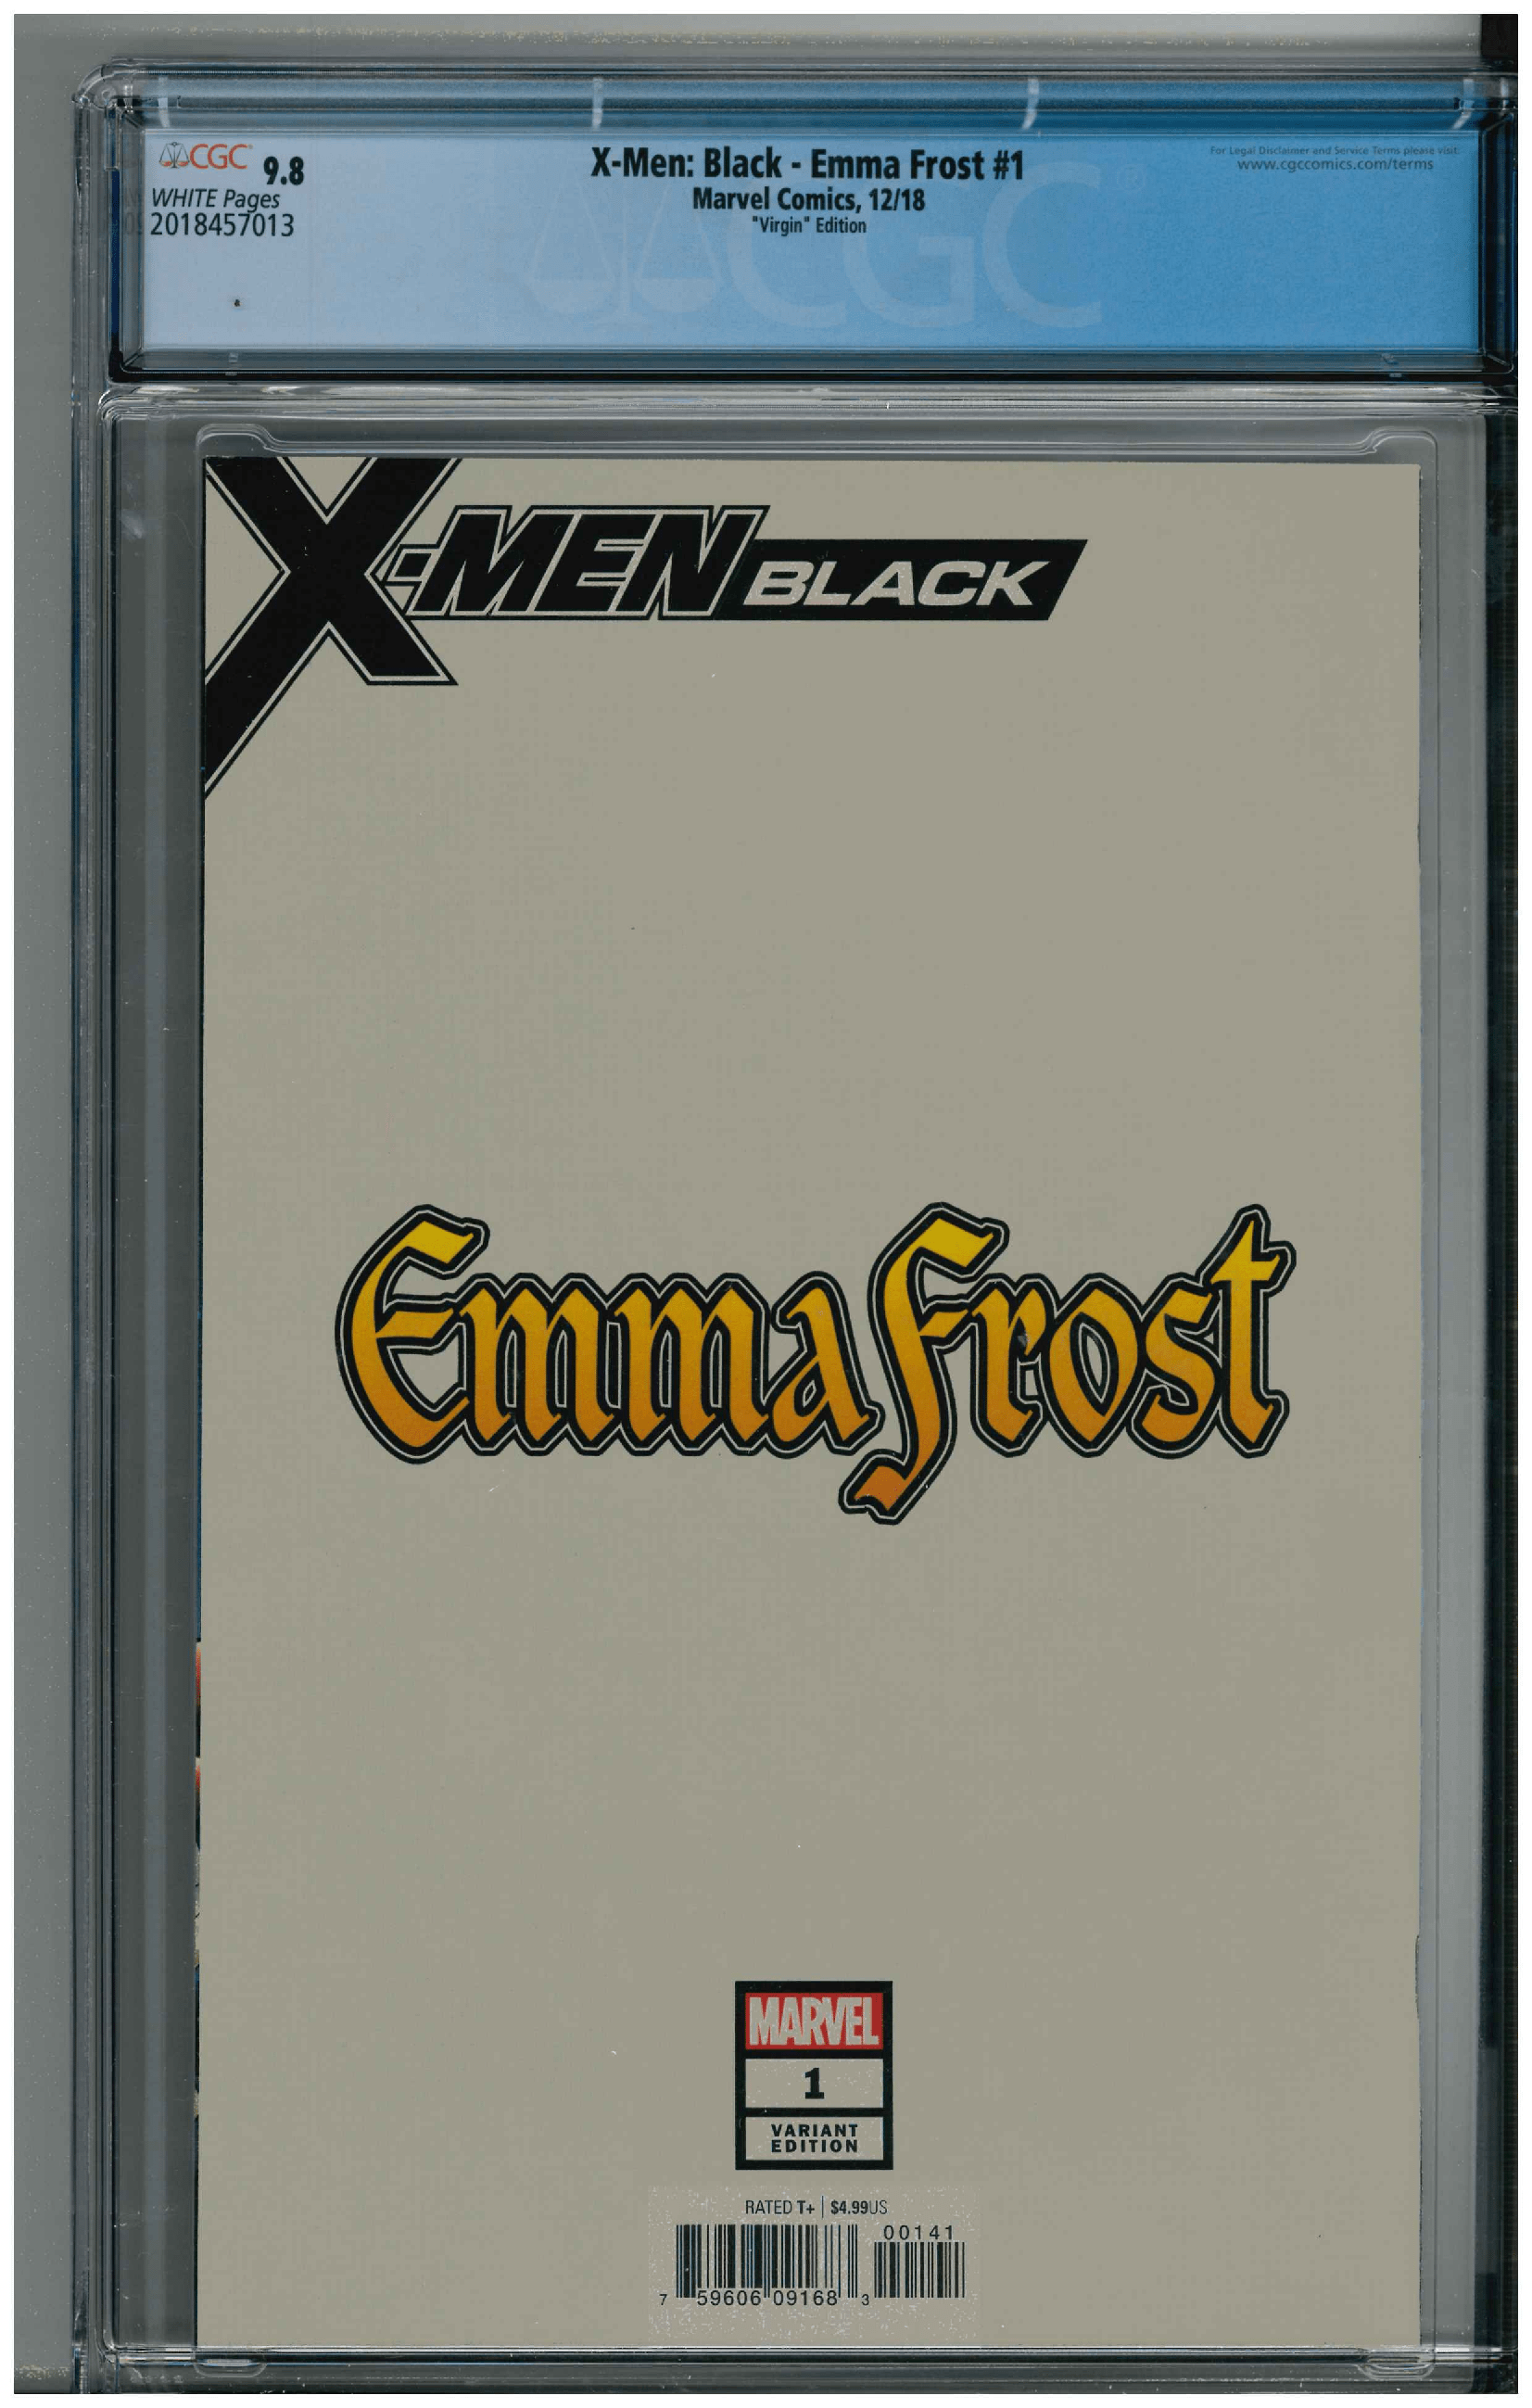 X-Men: Black - Emma Frost #1 backside